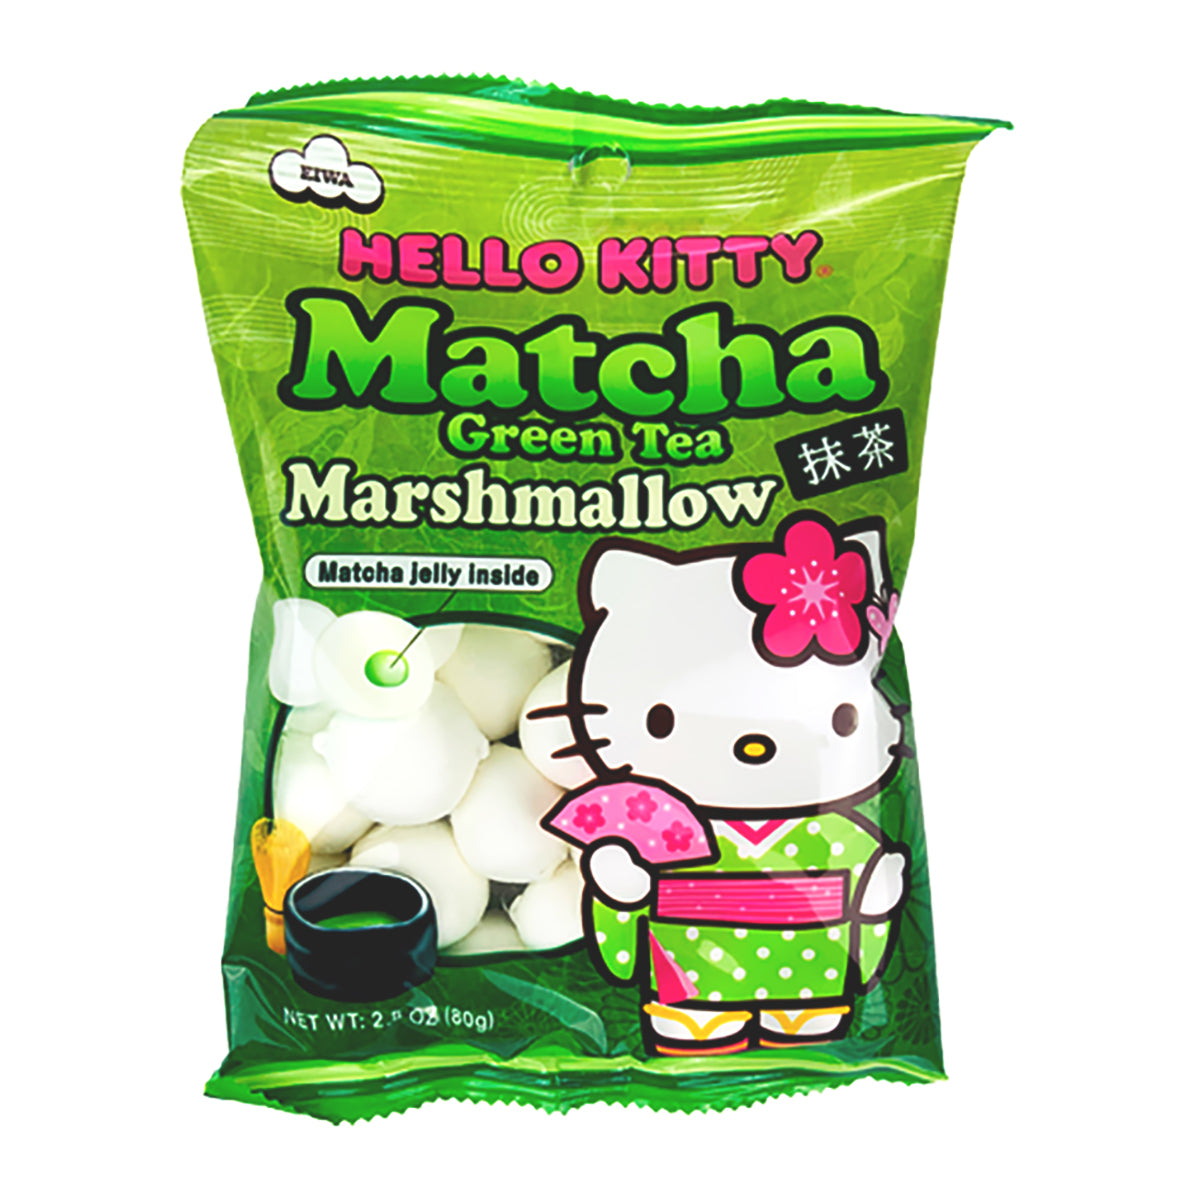 hello kitty marshmallow matcha green tea flavor - 90g